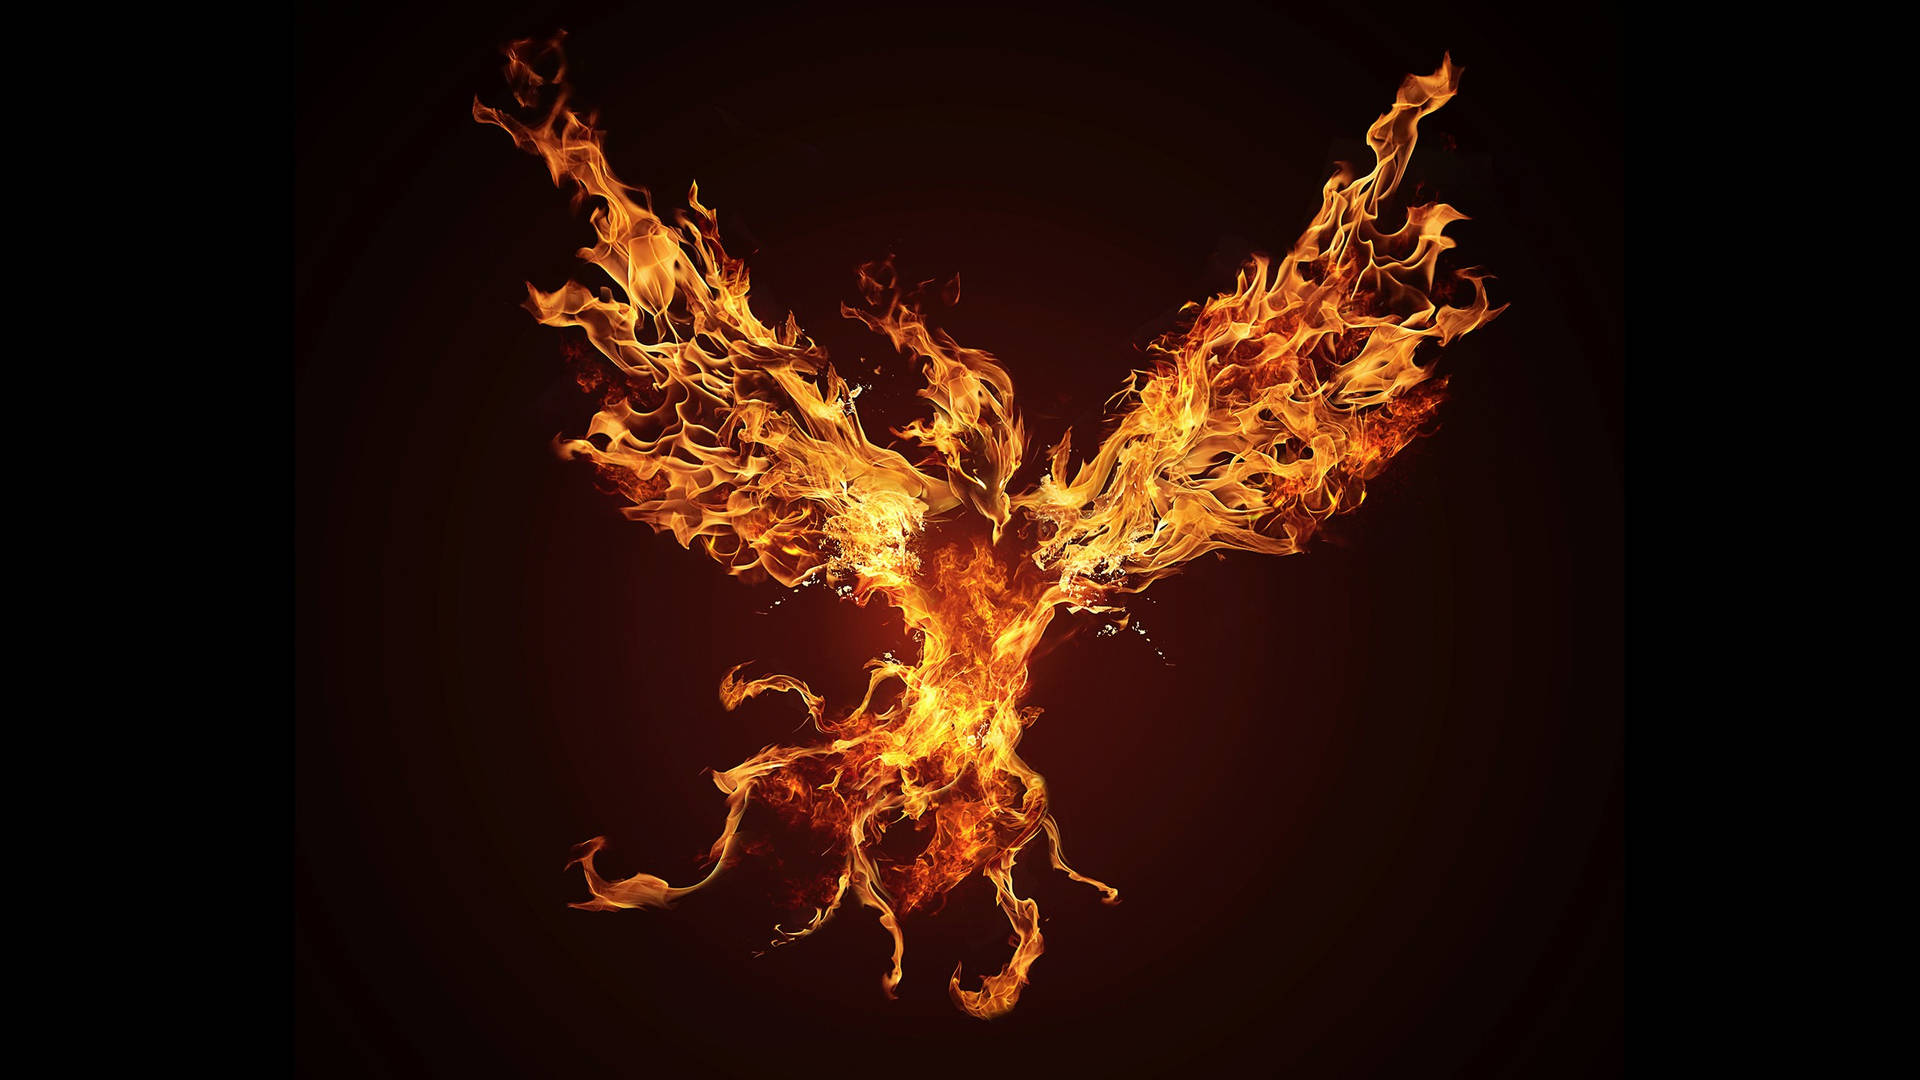 Flying Fire Phoenix Hd Background